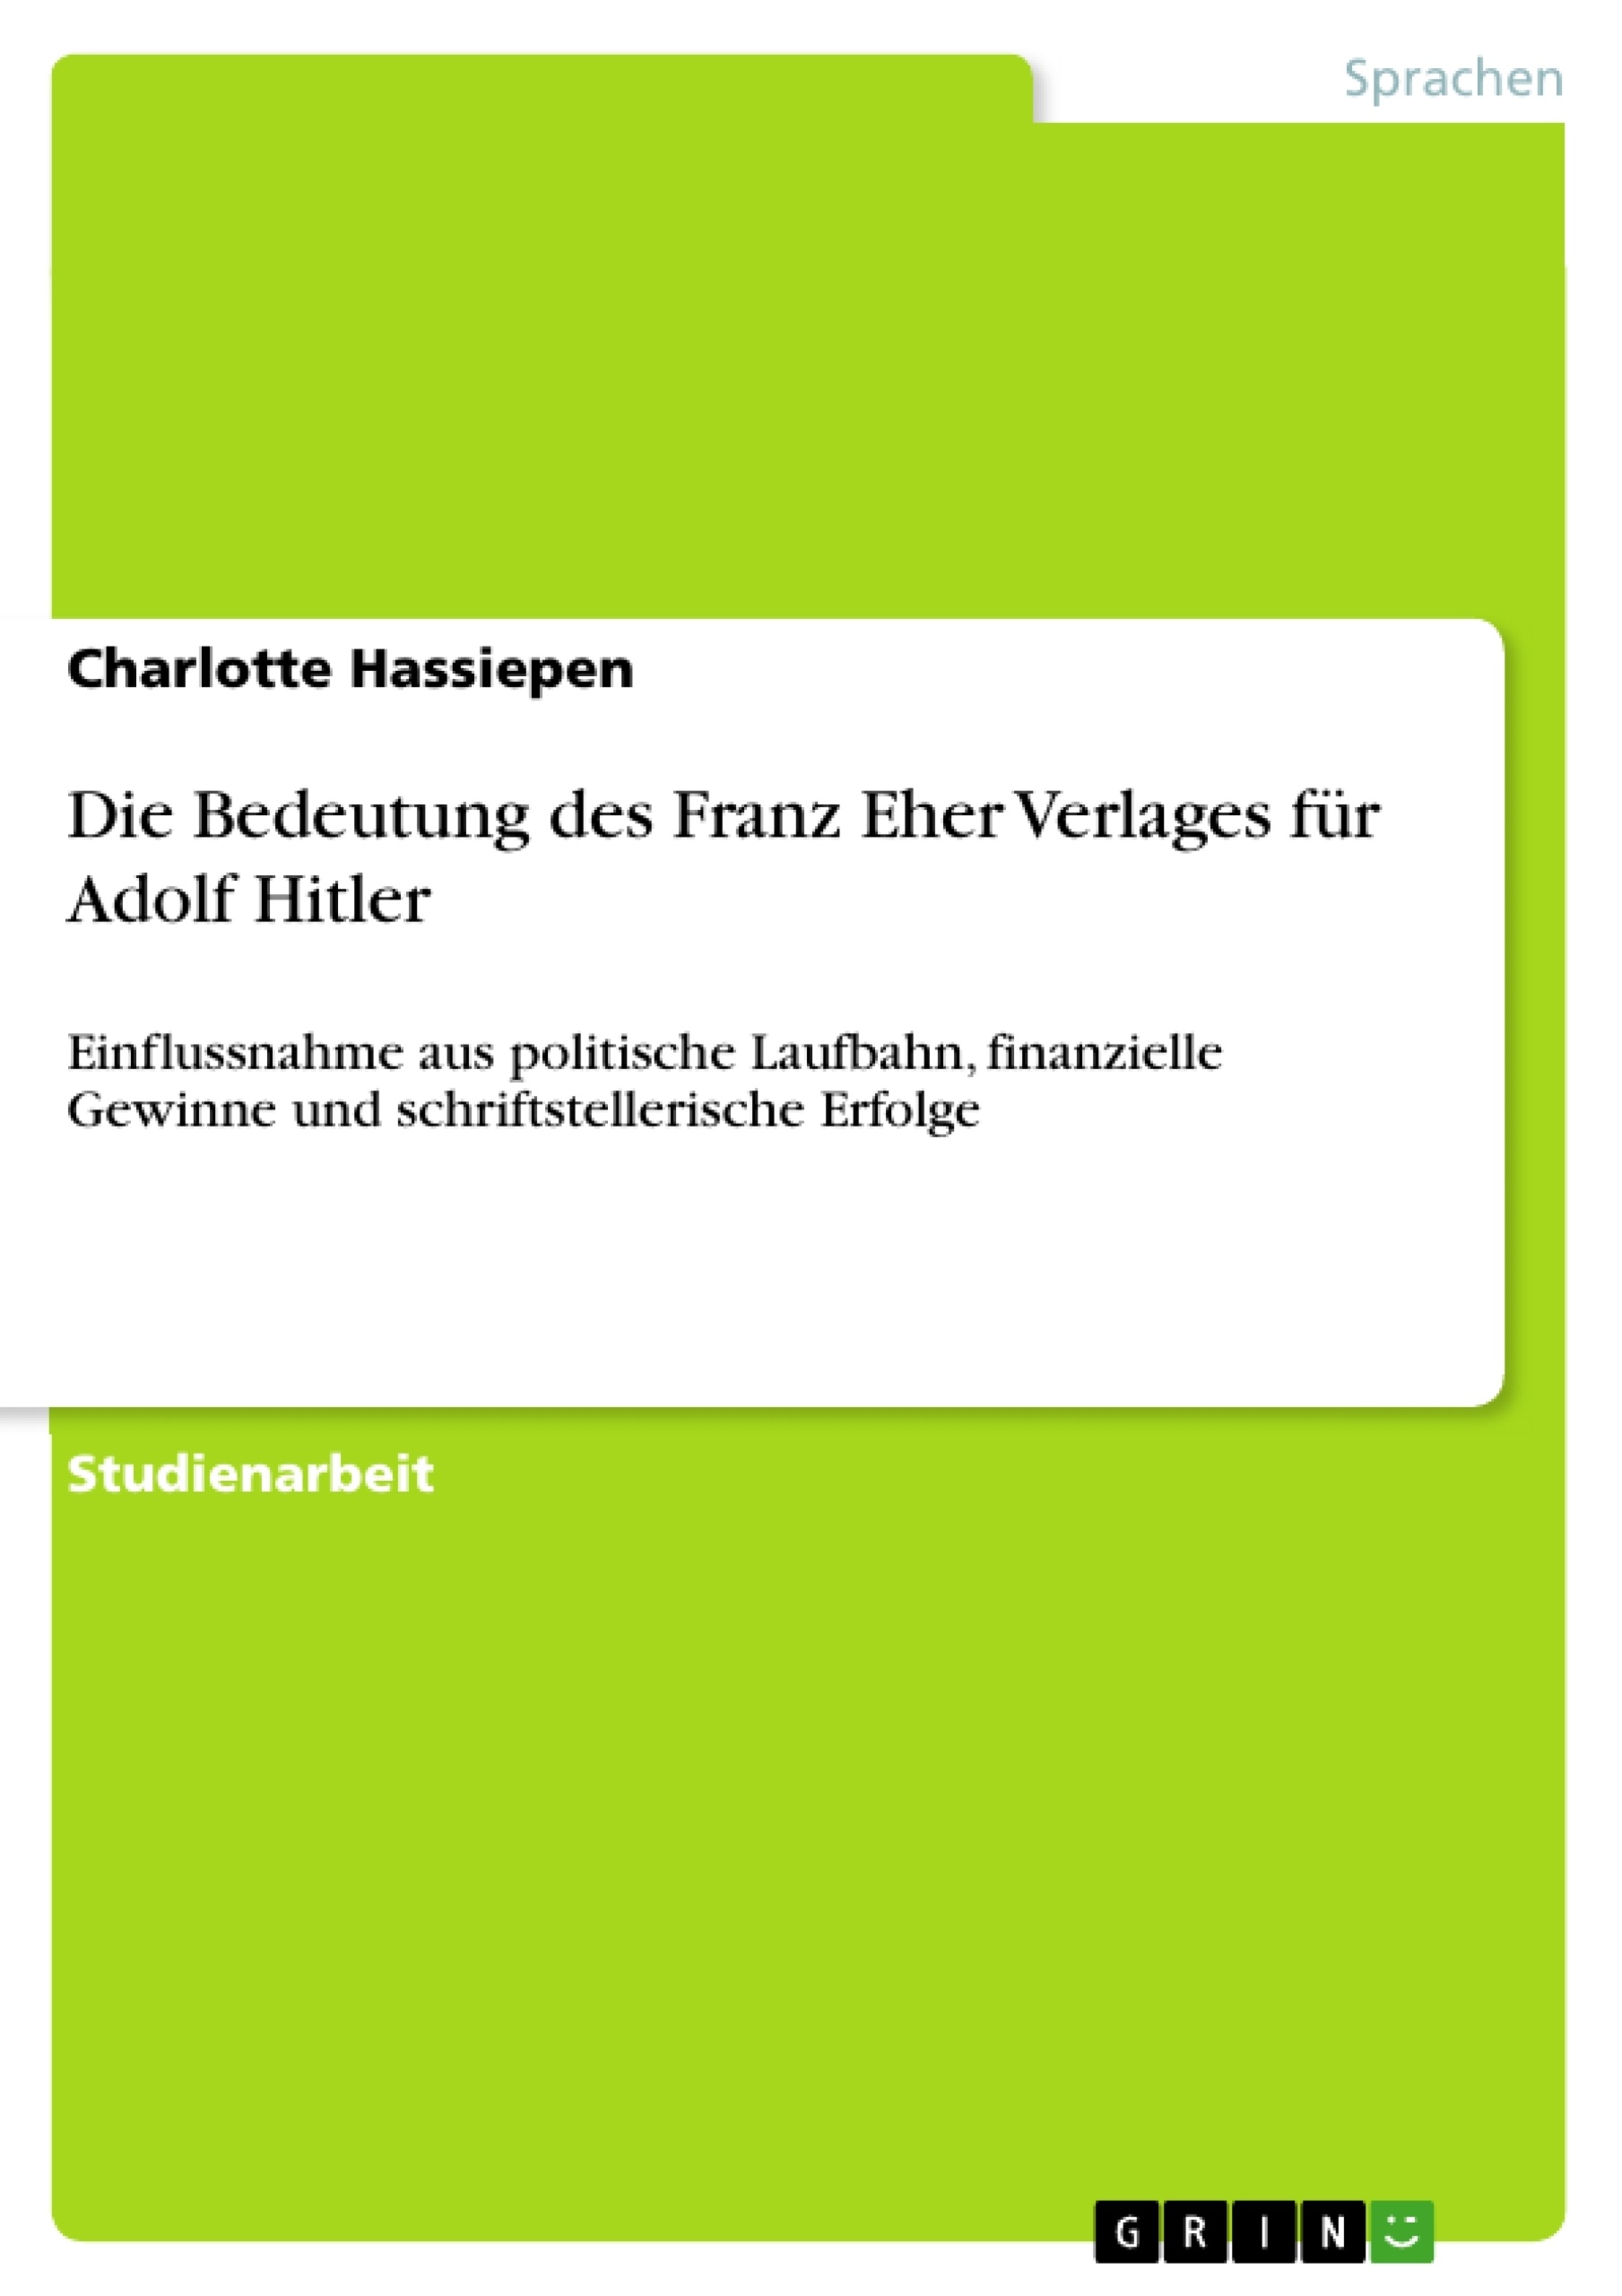 Título: Die Bedeutung des Franz Eher Verlages für Adolf Hitler